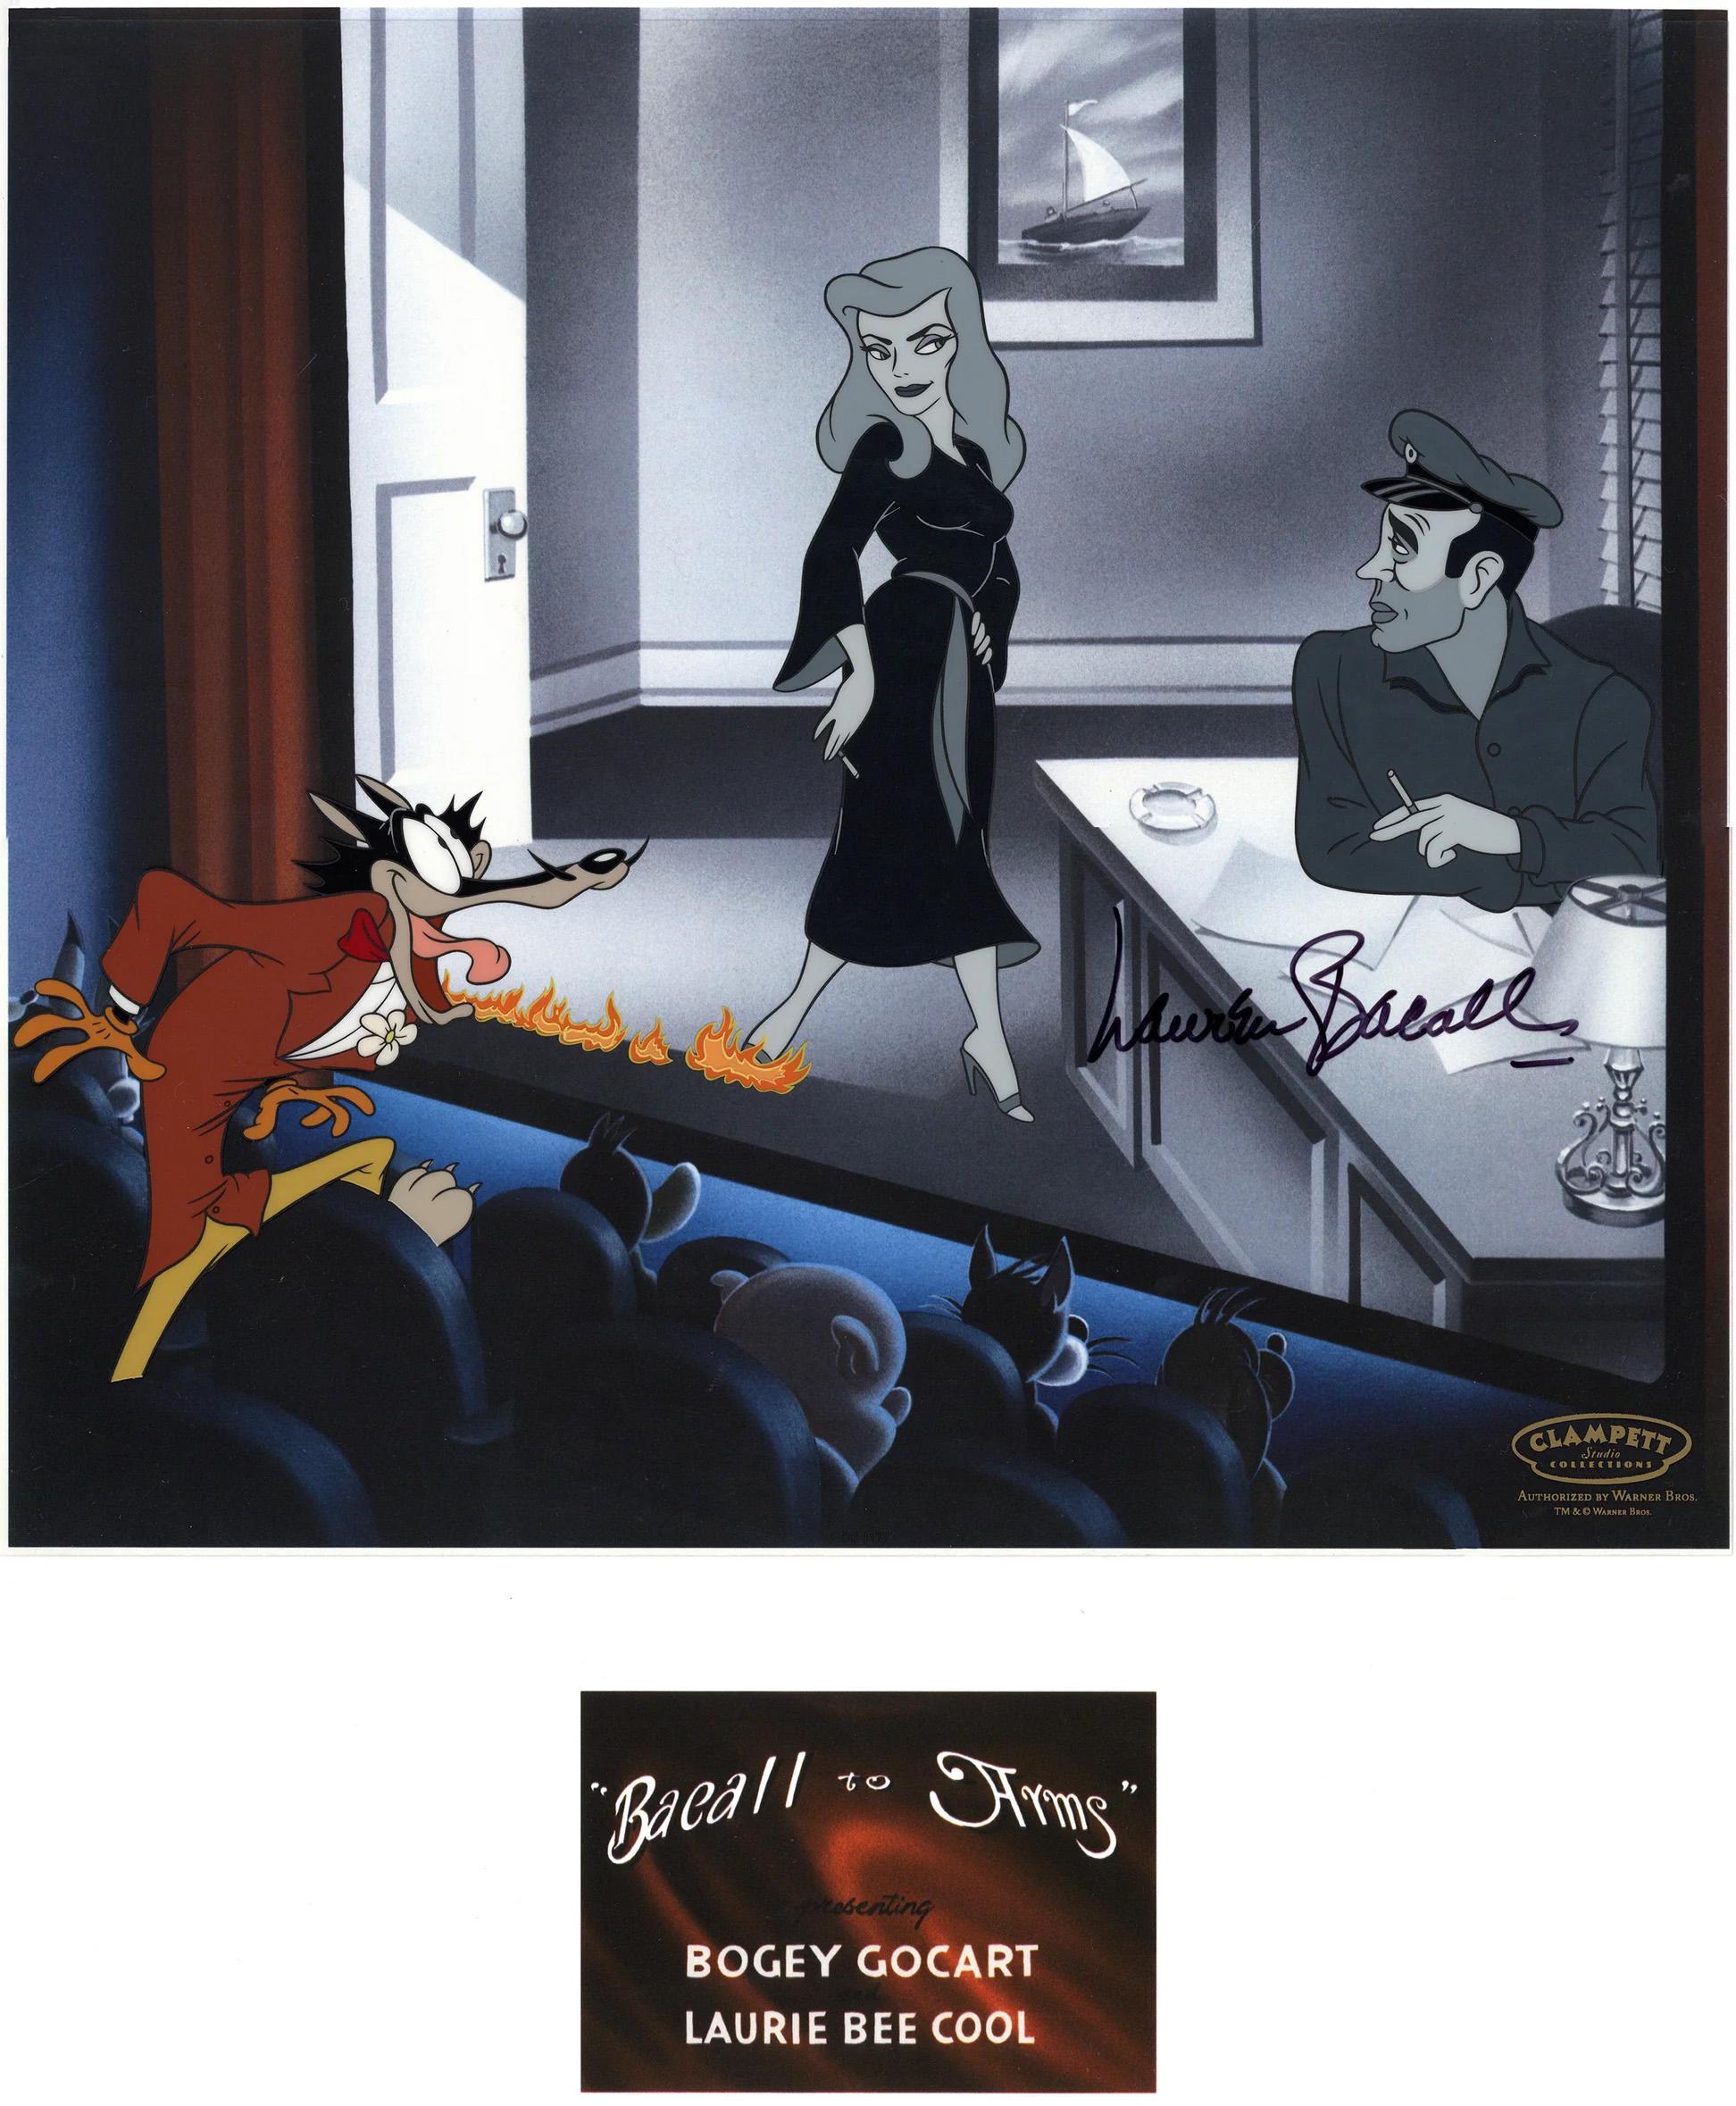 Bacall To Arms: Cel, limitierte Auflage, signiert von Lauren Bacall – Art von Looney Tunes Studio Artists